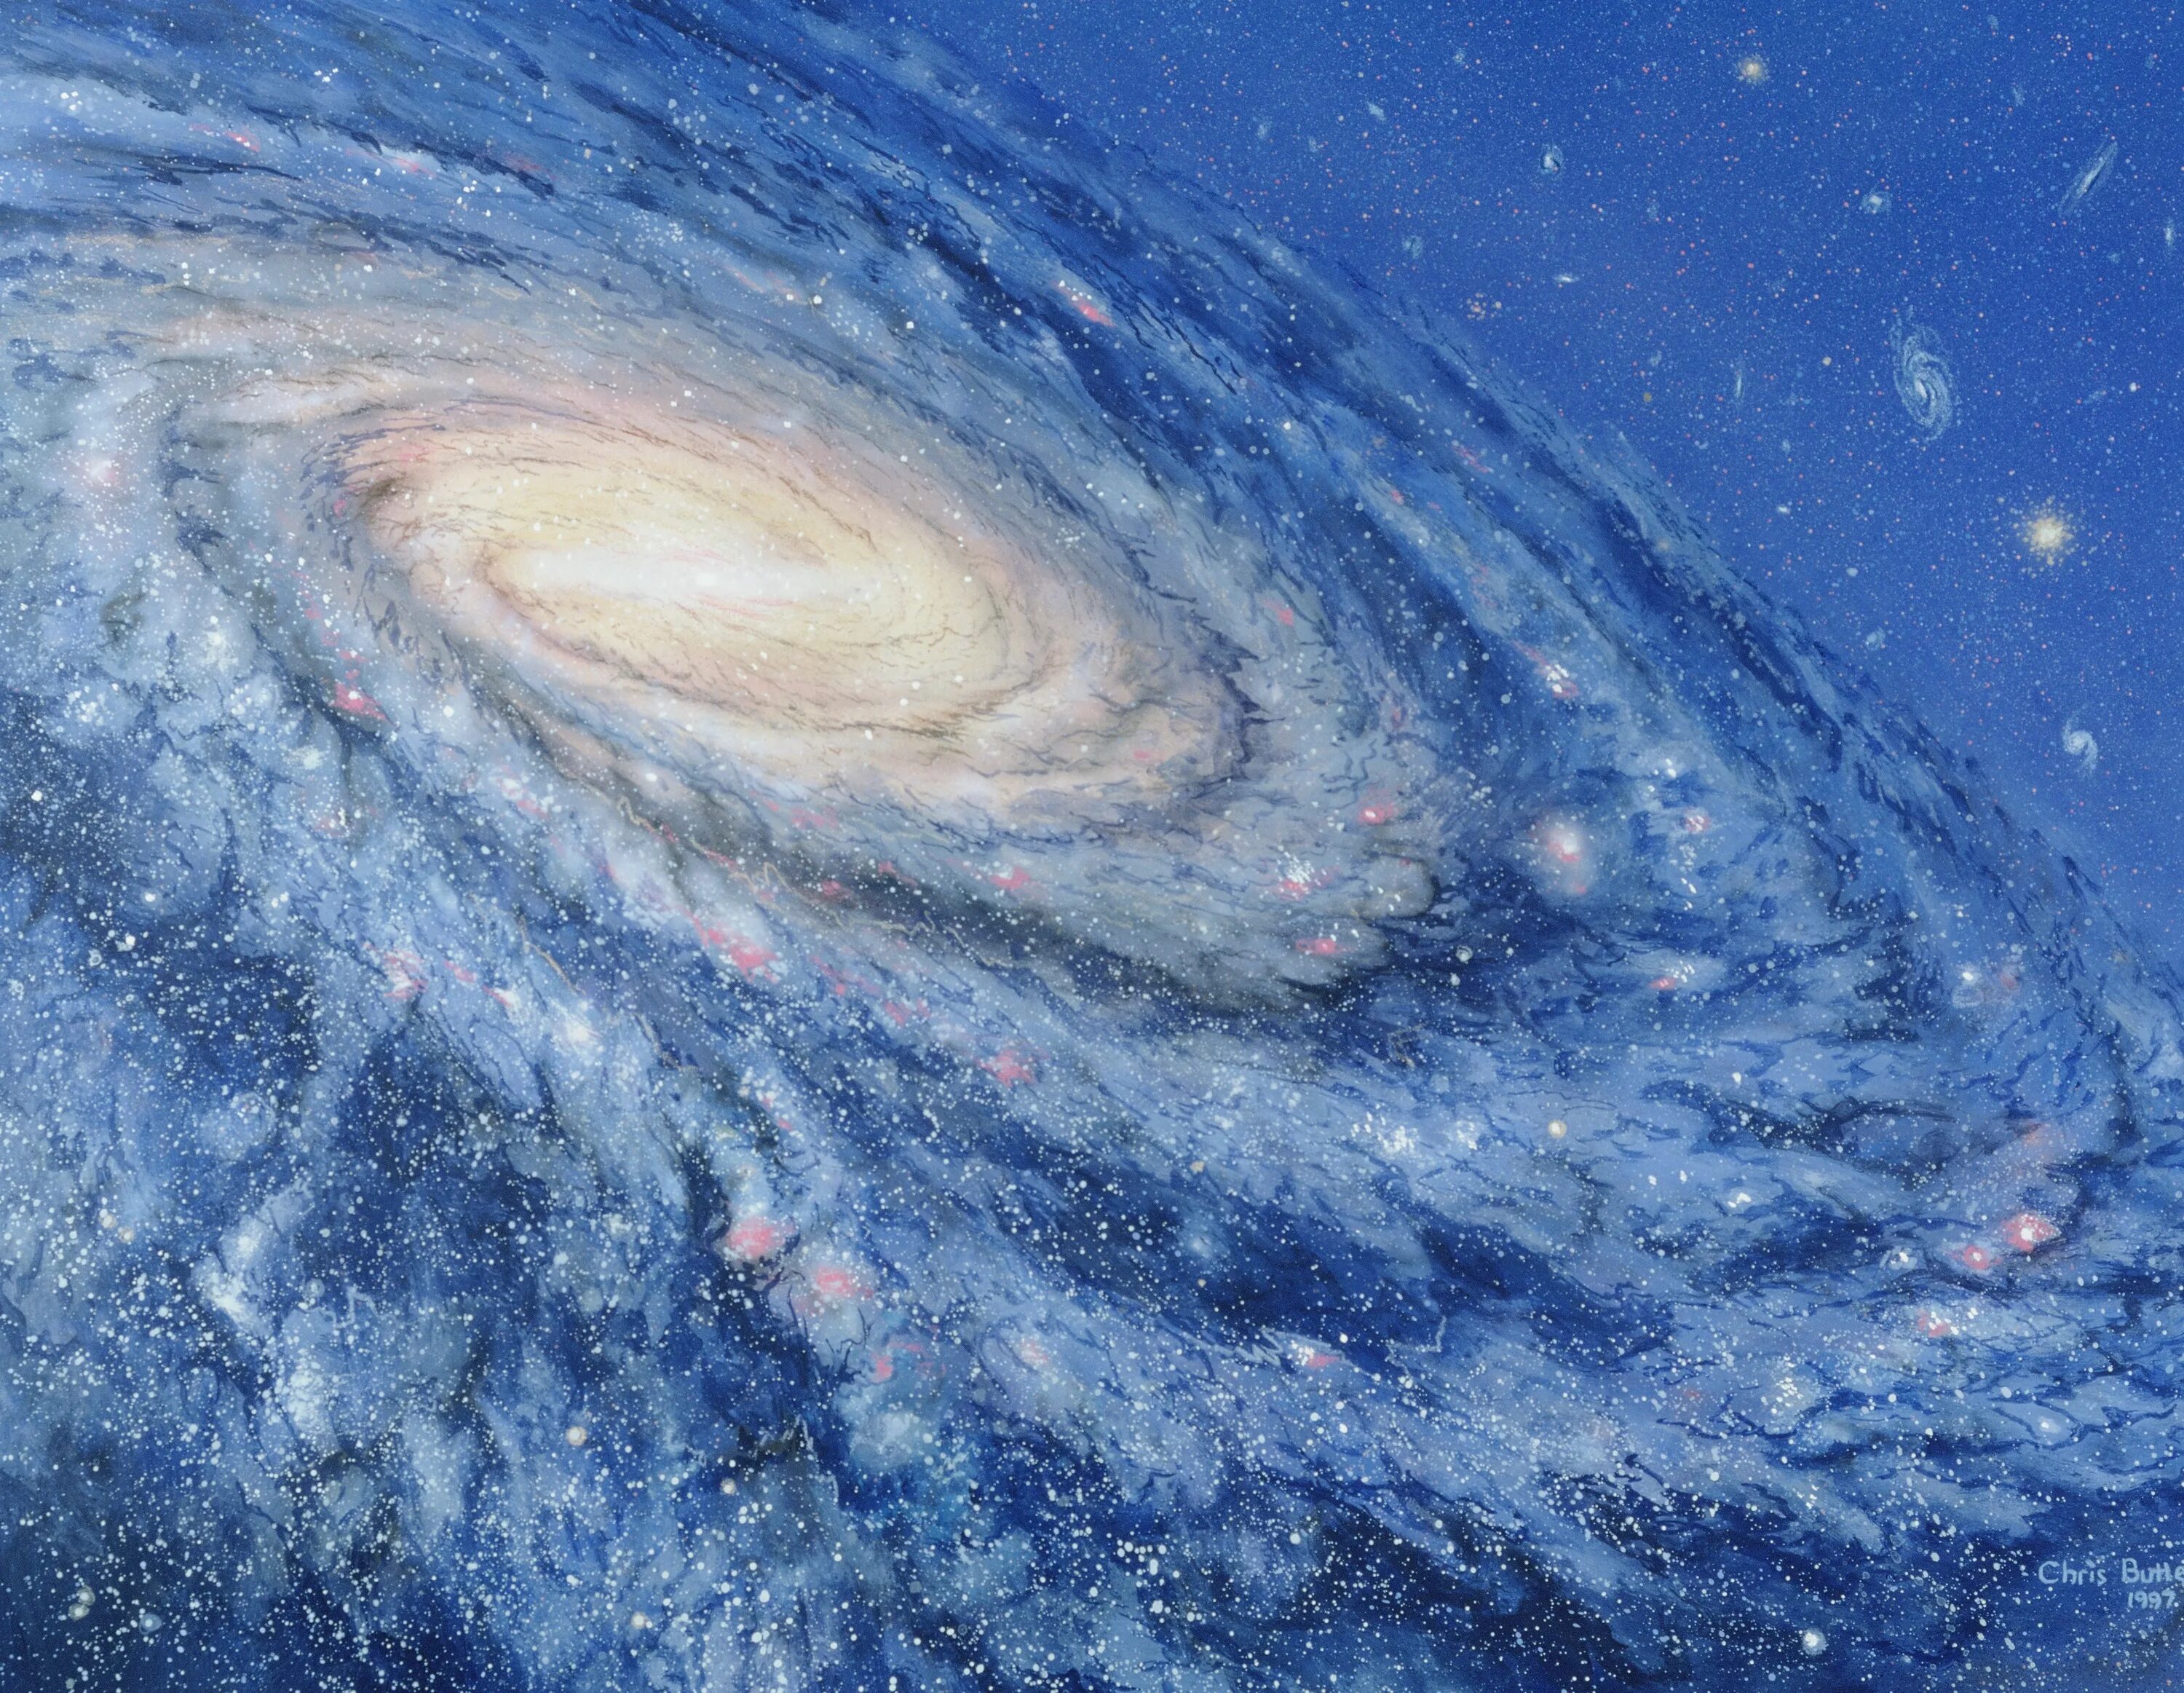 Наша галактика называется млечный путь. Наша Галактика Млечный путь. Галактика Млечный путь Солнечная система. Милки Вэй Галактика. Галактика в галактике Млечный путь.